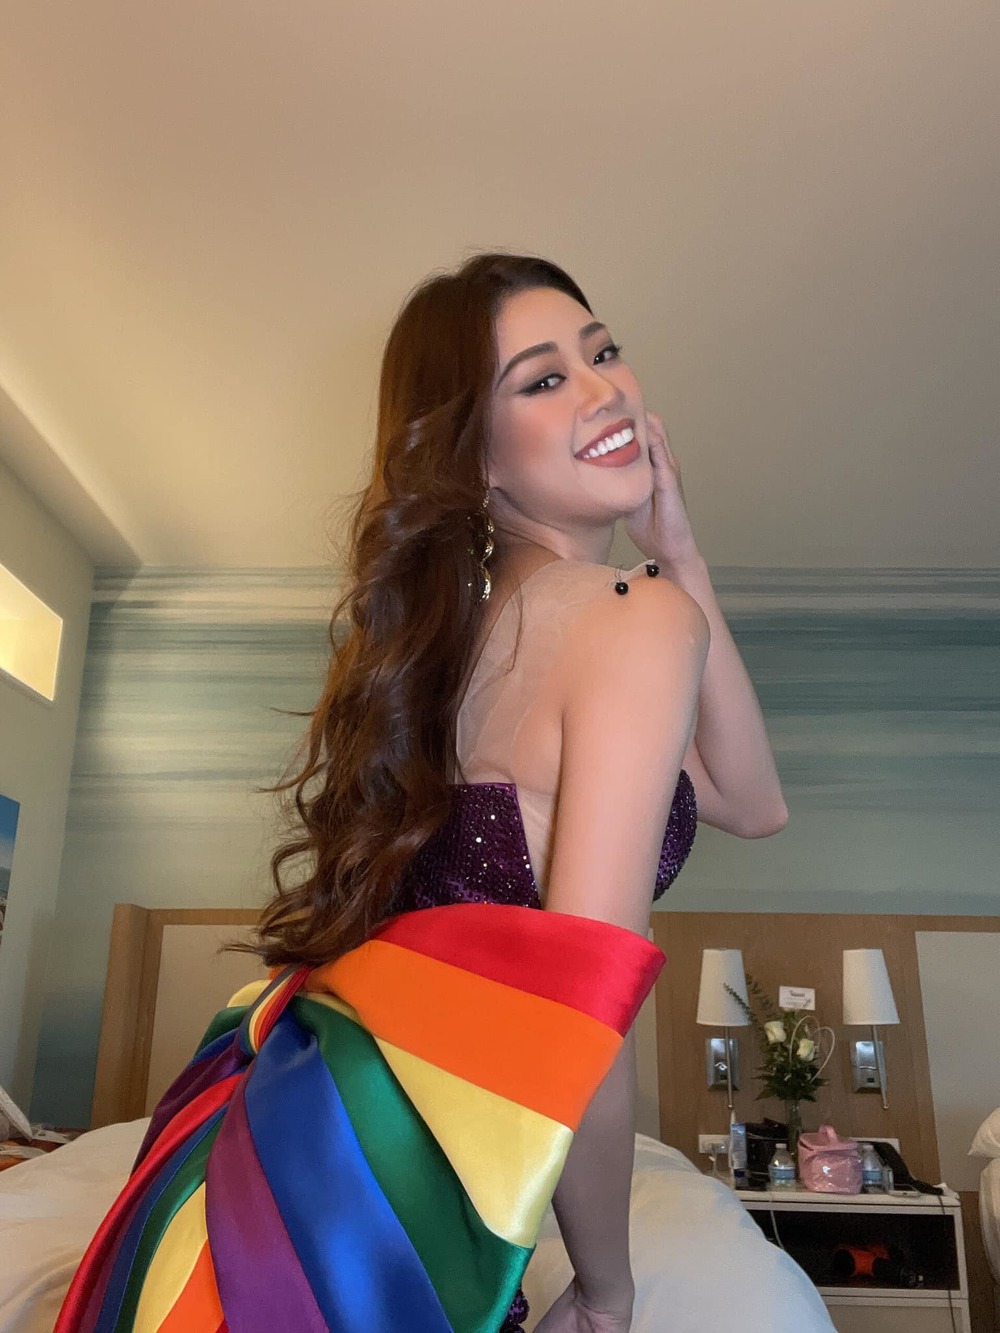  
Chiếc váy lục sắc được Khánh Vân mang tới Miss Universe, thể hiện sự ủng hộ đối với cộng đồng LGBT. Đông đảo người hâm mộ cảm động vì điều này. (Ảnh: FBNV)